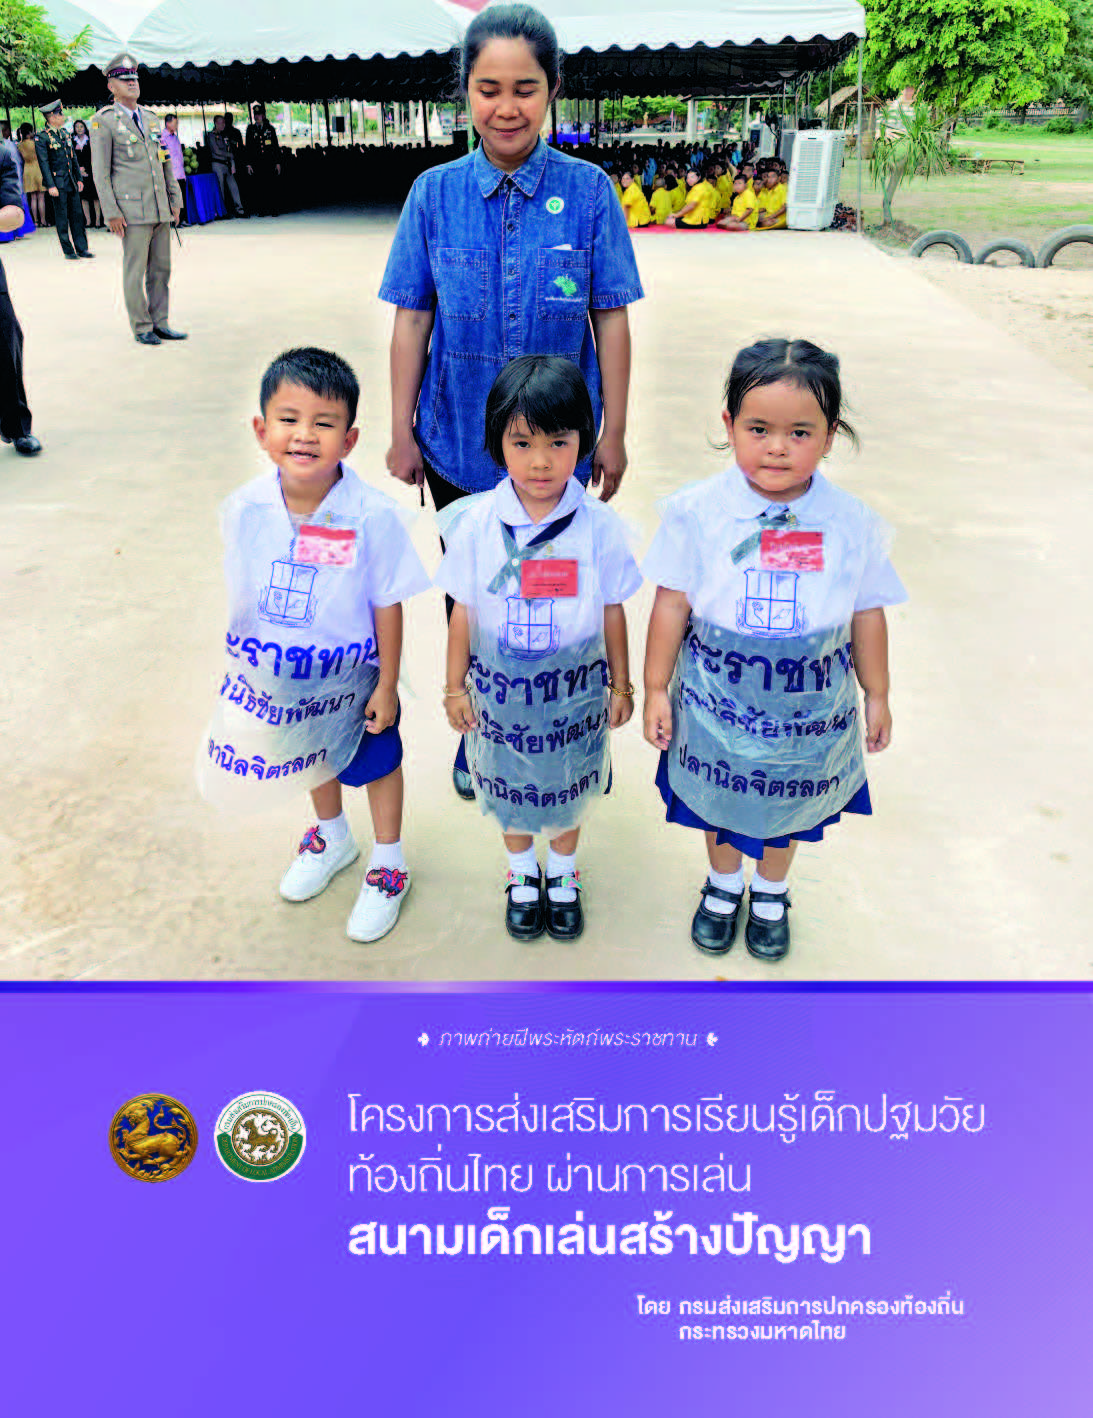 บทเรียนความสำเร็จโครงการส่งเสริมการเรียนรู้เด็กปฐมวัย ท้องถิ่นไทย ผ่านการเล่น (สนามเด็กเล่นสร้างปัญญา)